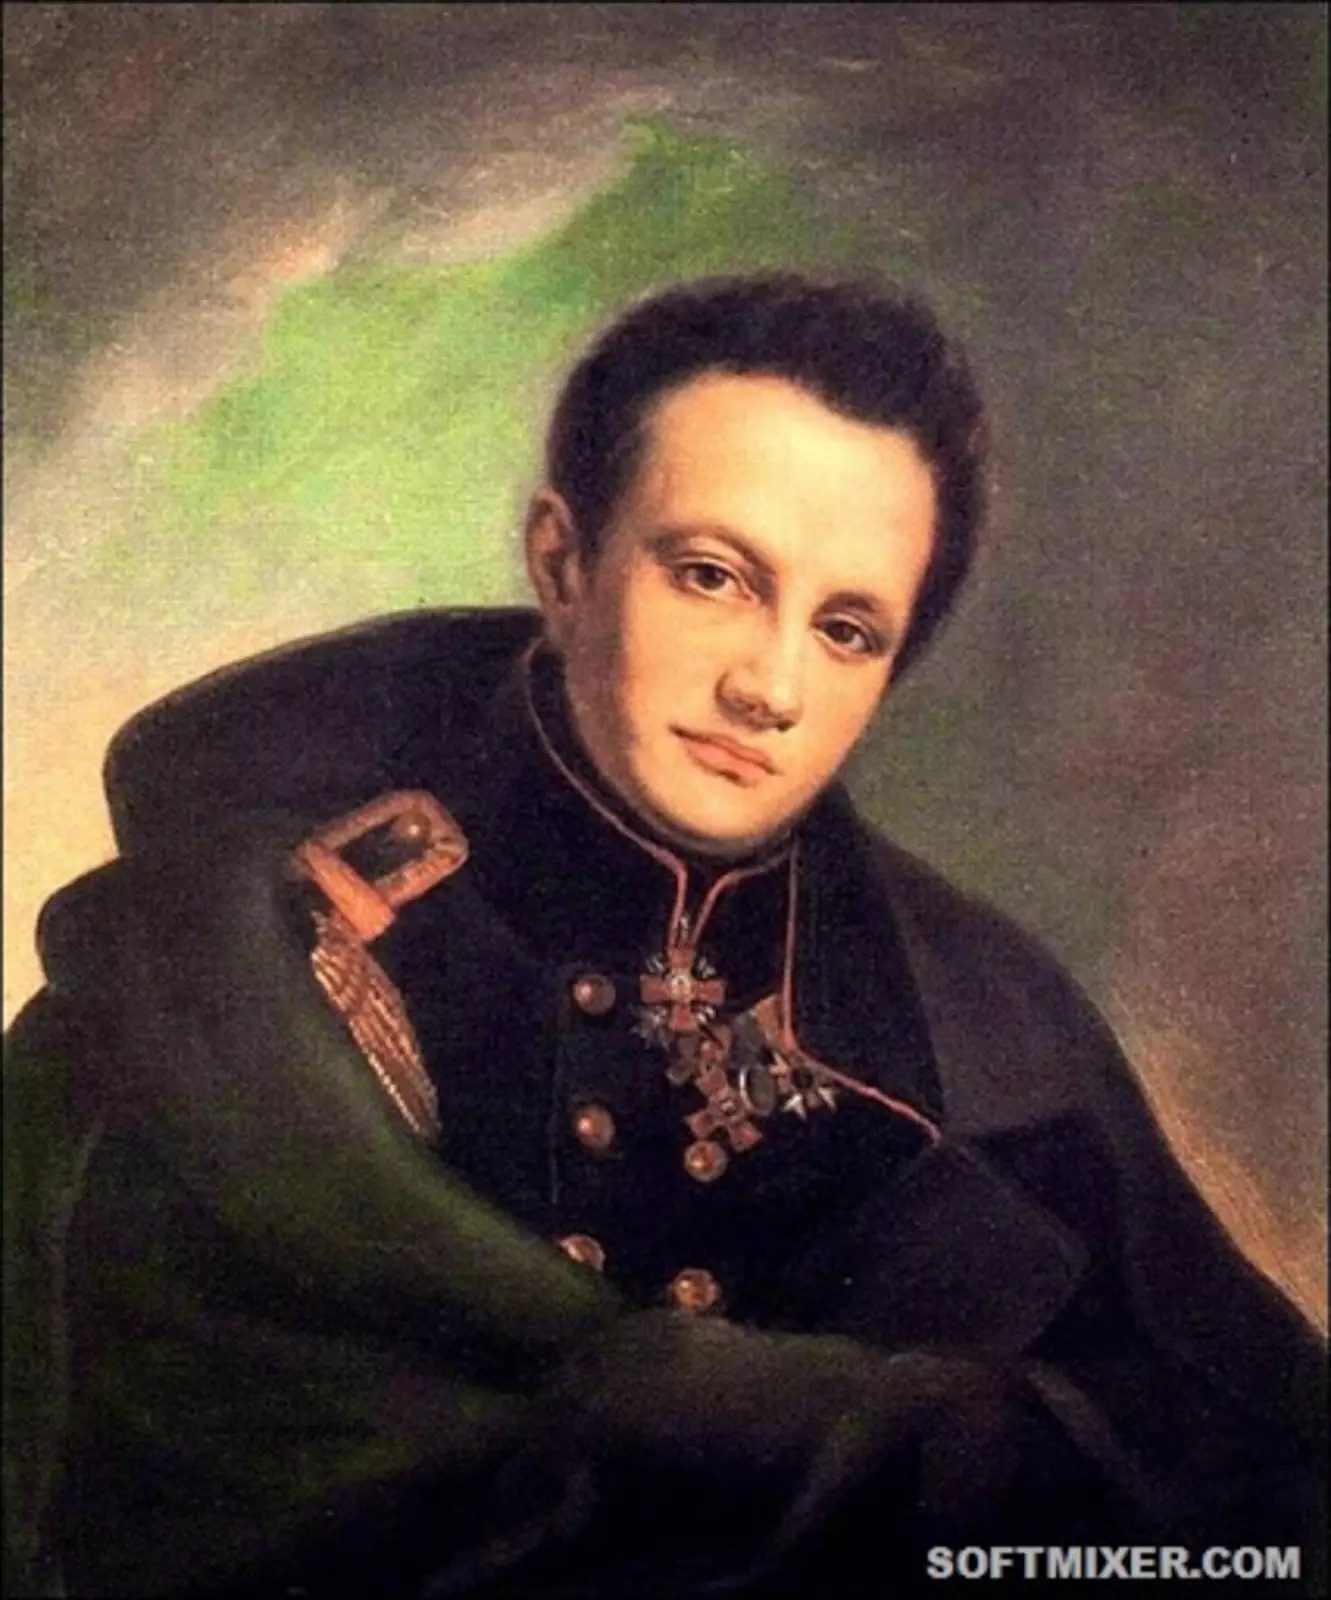 Александр Николаевич Раевский (1795—1868) — участник Отечественной войны 1812 года, одесский приятель и соперник Пушкина, адресат его знаменитого стихотворения «Демон».